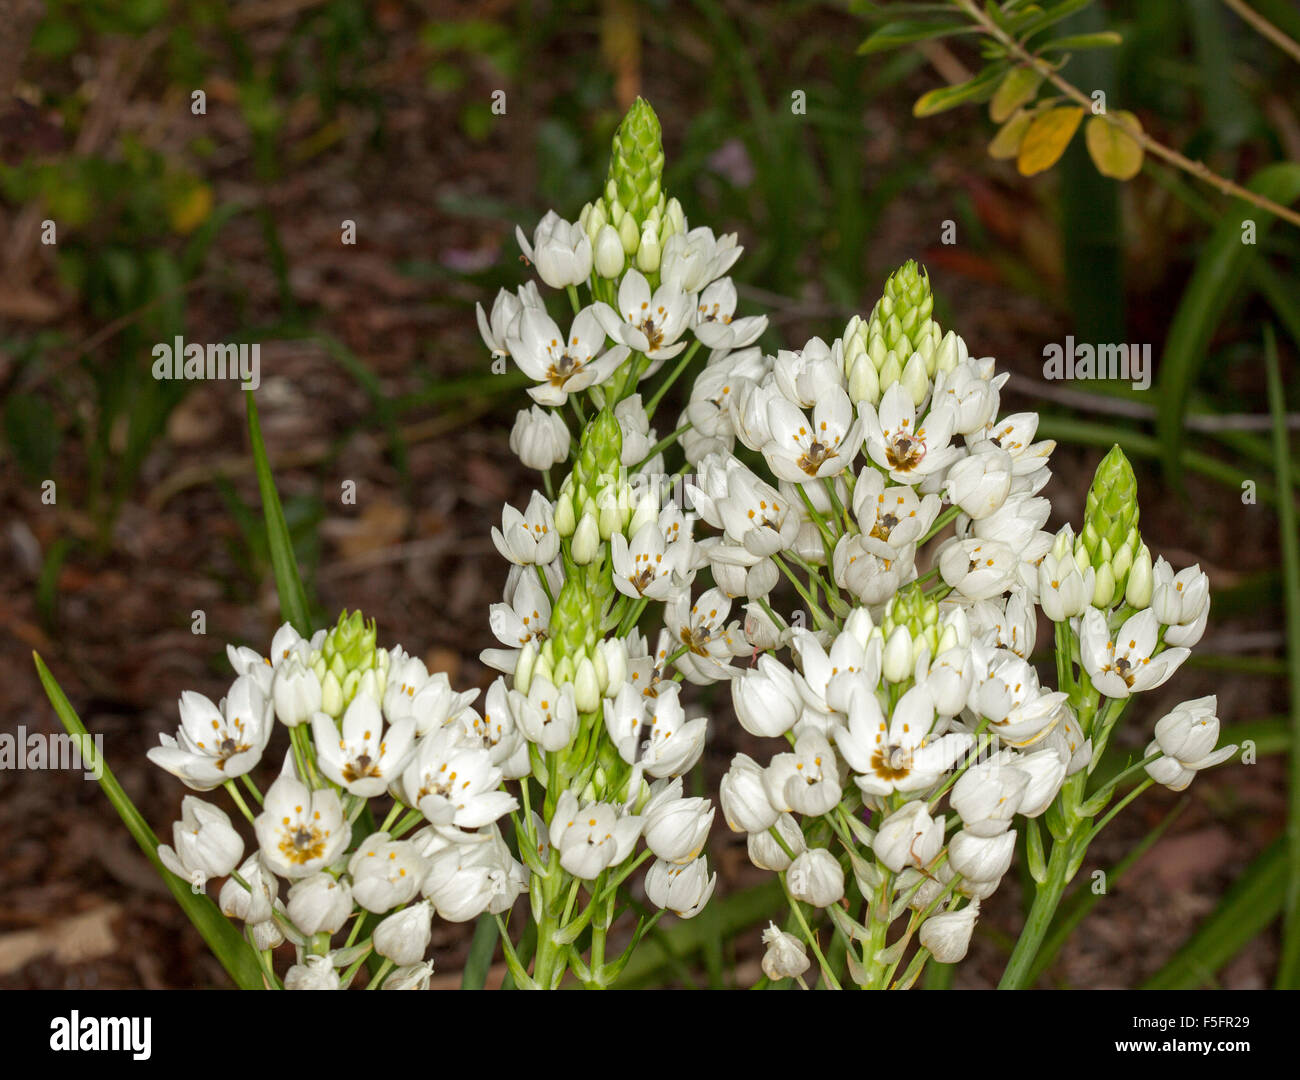 Large cluster of white flowers of Ornithogalum dubium, Star of Bethlehem, bulbous plant on dark background Stock Photo